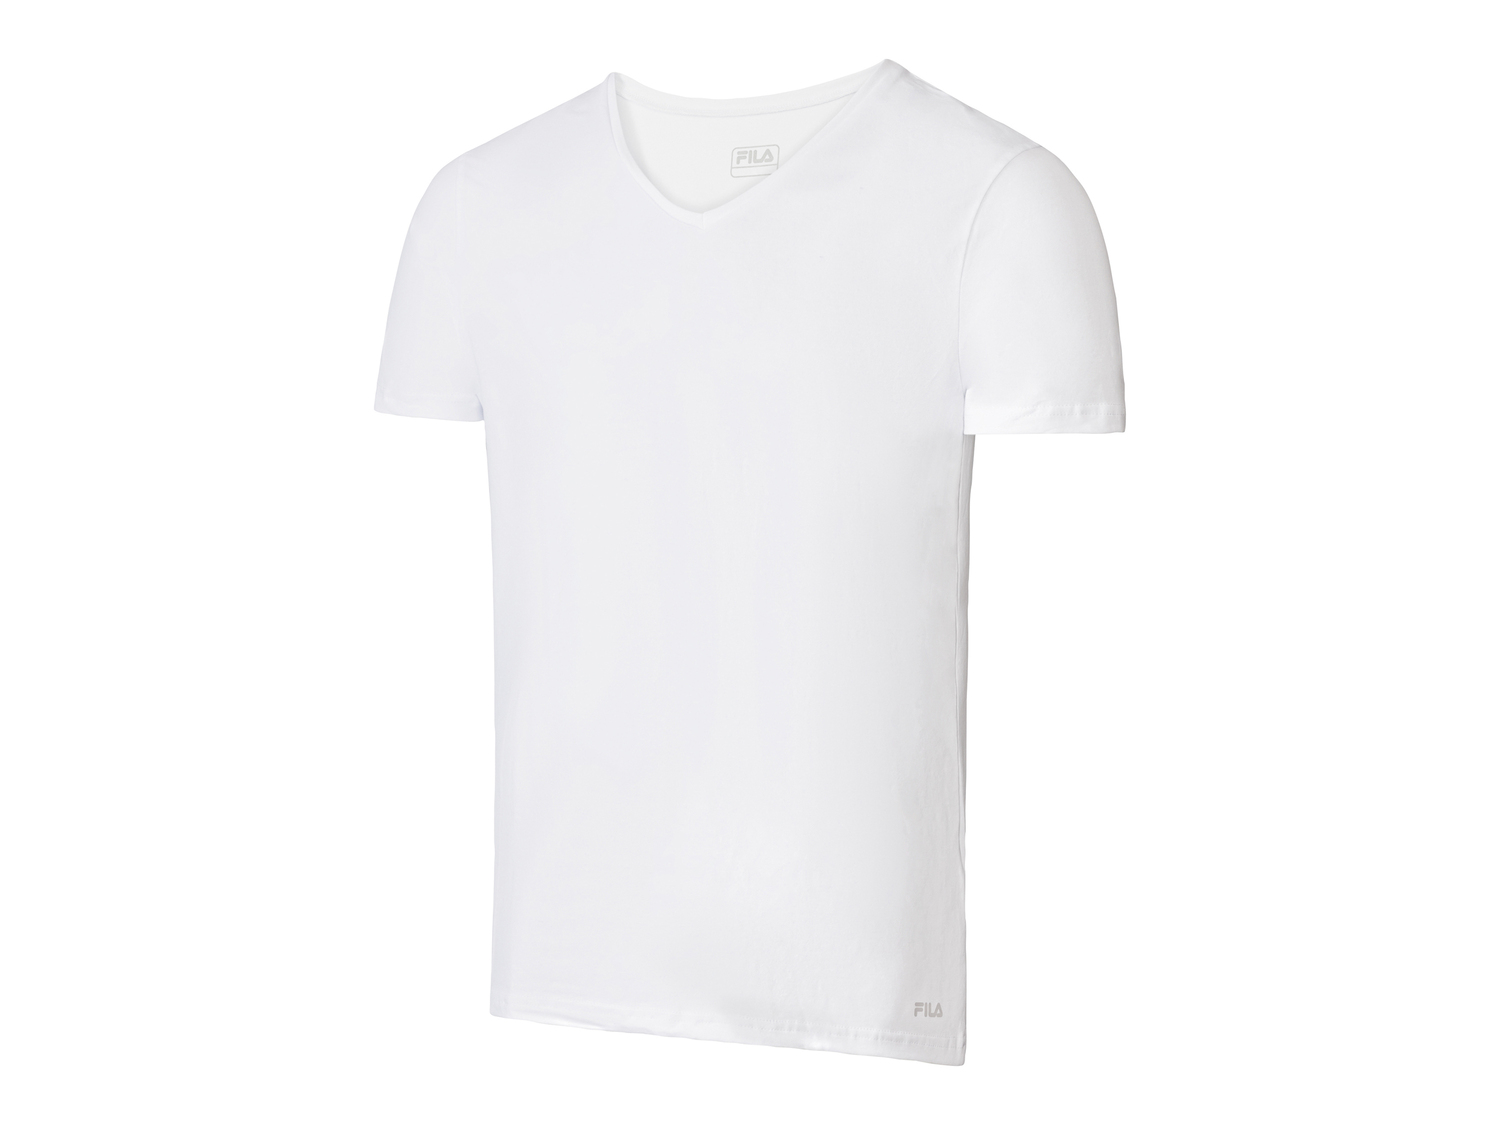 T-shirt intima da uomo Fila, prezzo 11.99 &#8364; 
Misure: M-XXL
Taglie disponibili

Caratteristiche
 ...